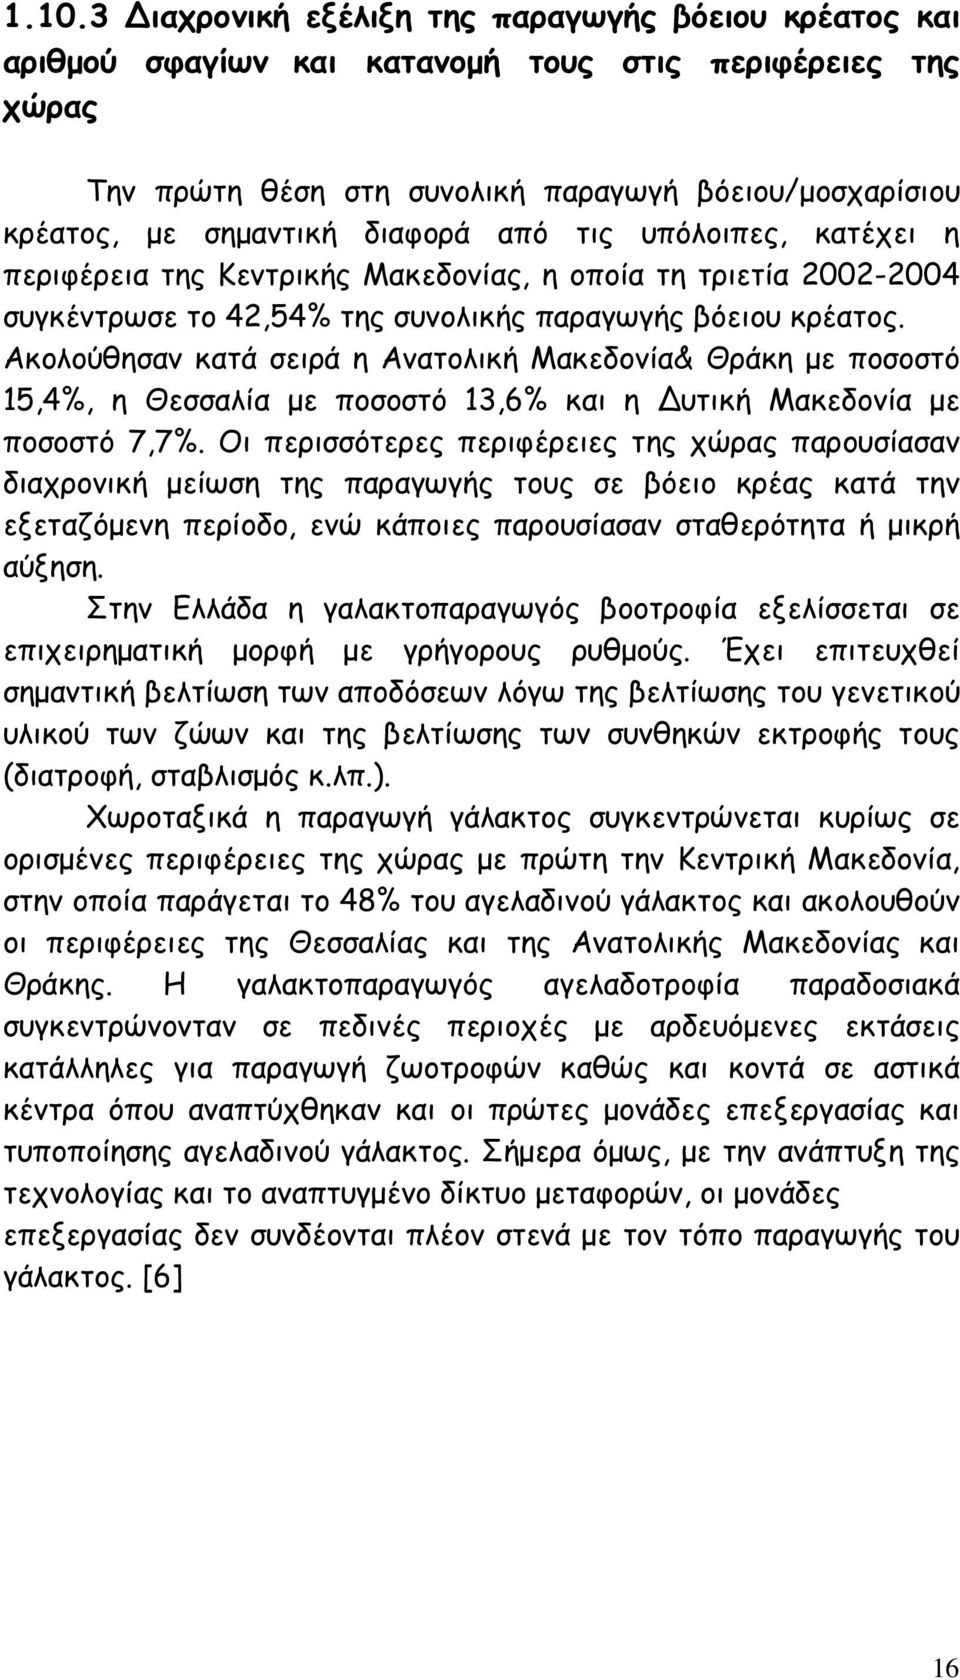 Ακολούθησαν κατά σειρά η Ανατολική Μακεδονία& Θράκη µε ποσοστό 15,4%, η Θεσσαλία µε ποσοστό 13,6% και η υτική Μακεδονία µε ποσοστό 7,7%.